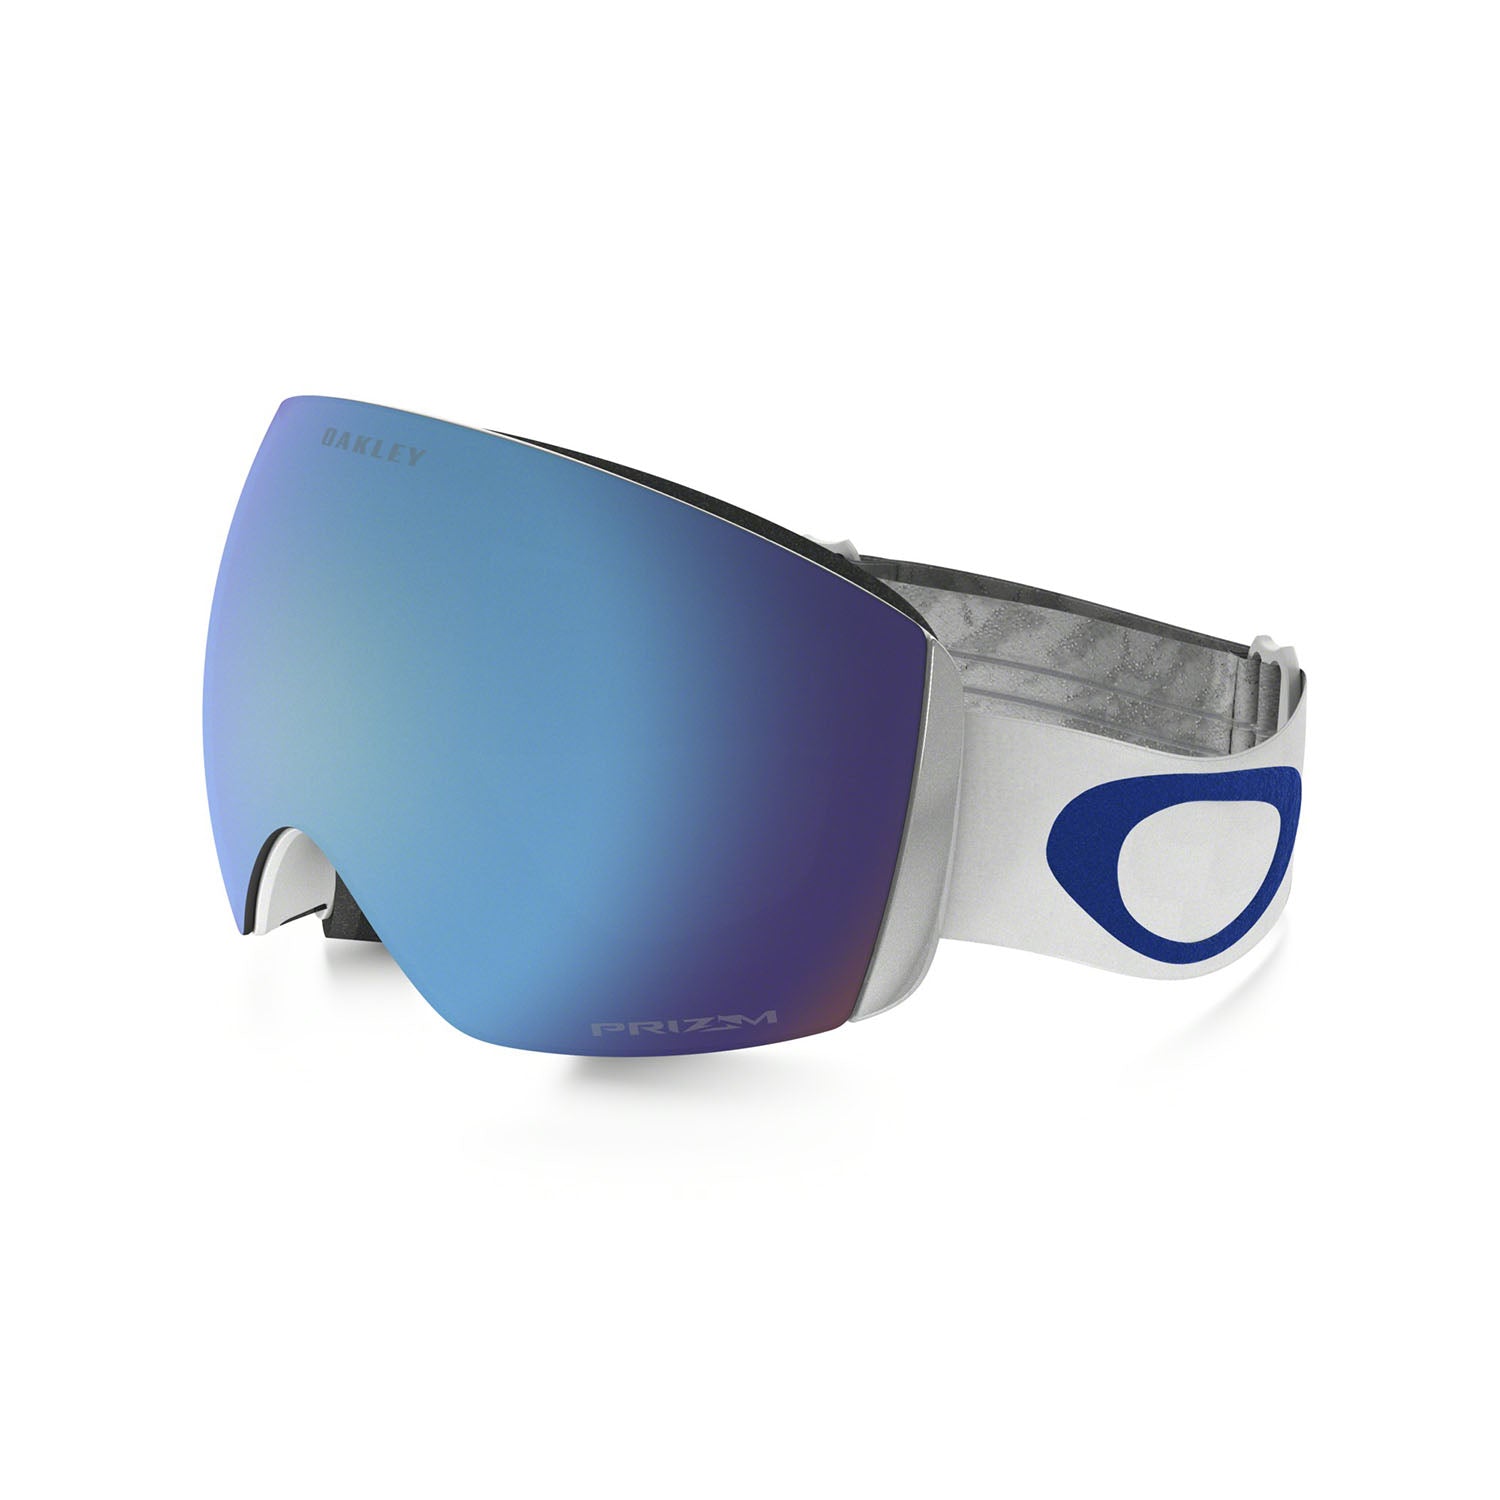 Lunettes de ski, lunettes de soleil oakley, lunettes glacier